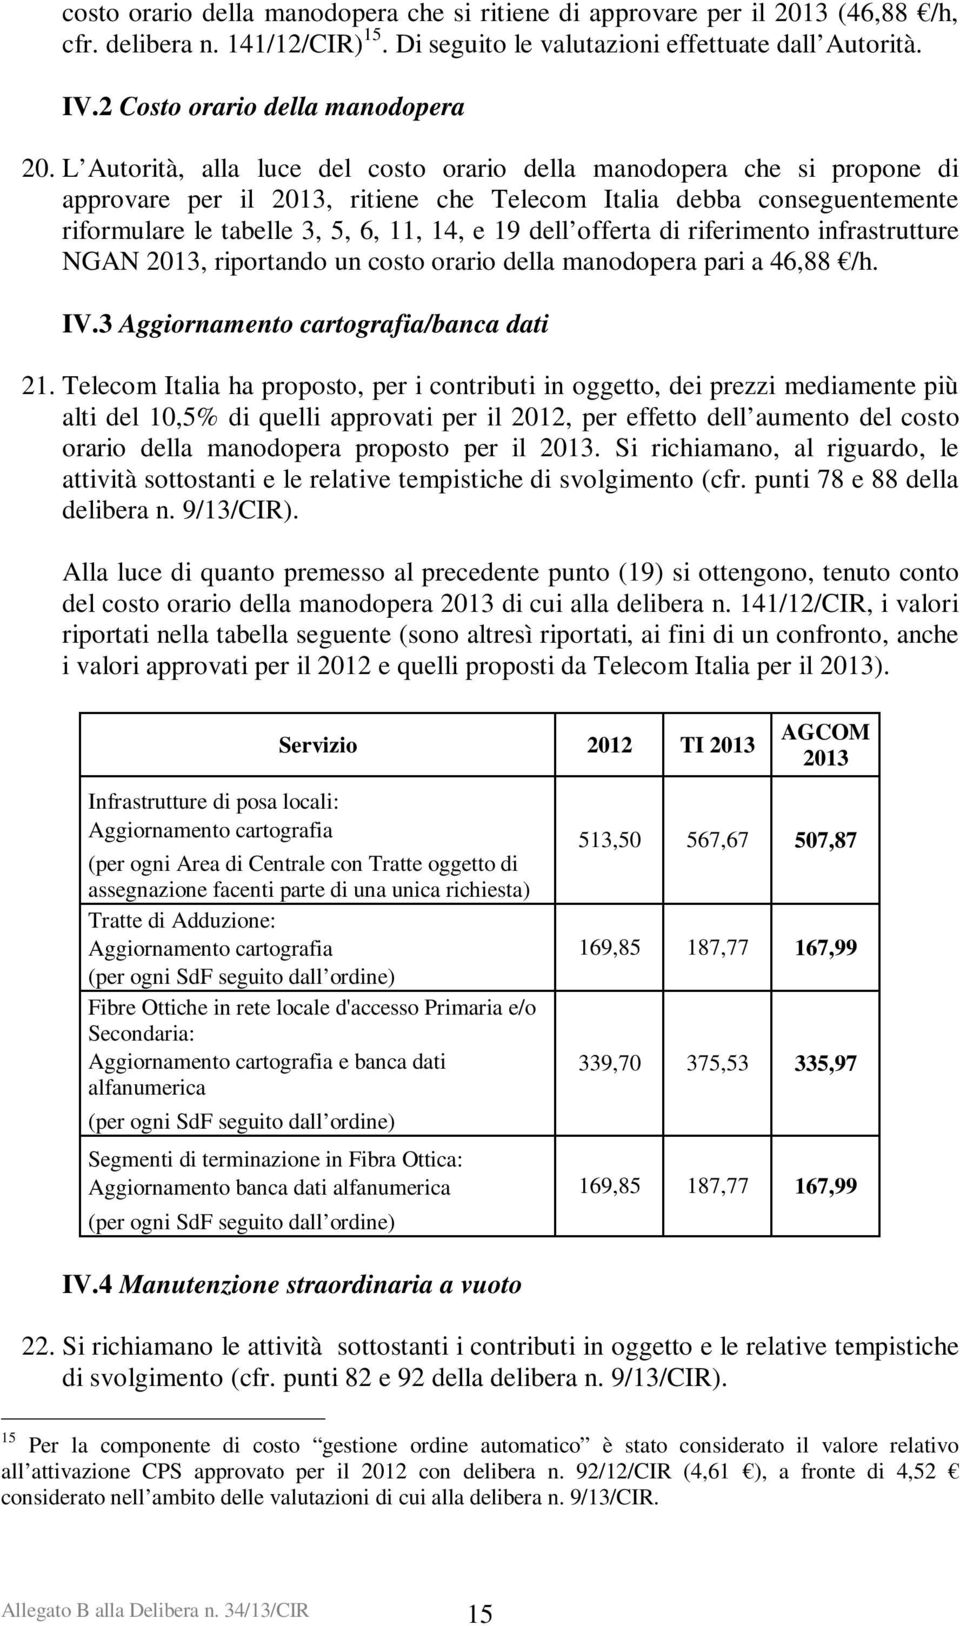 L Autorità, alla luce del costo orario della manodopera che si propone di approvare per il 2013, ritiene che Telecom Italia debba conseguentemente riformulare le tabelle 3, 5, 6, 11, 14, e 19 dell